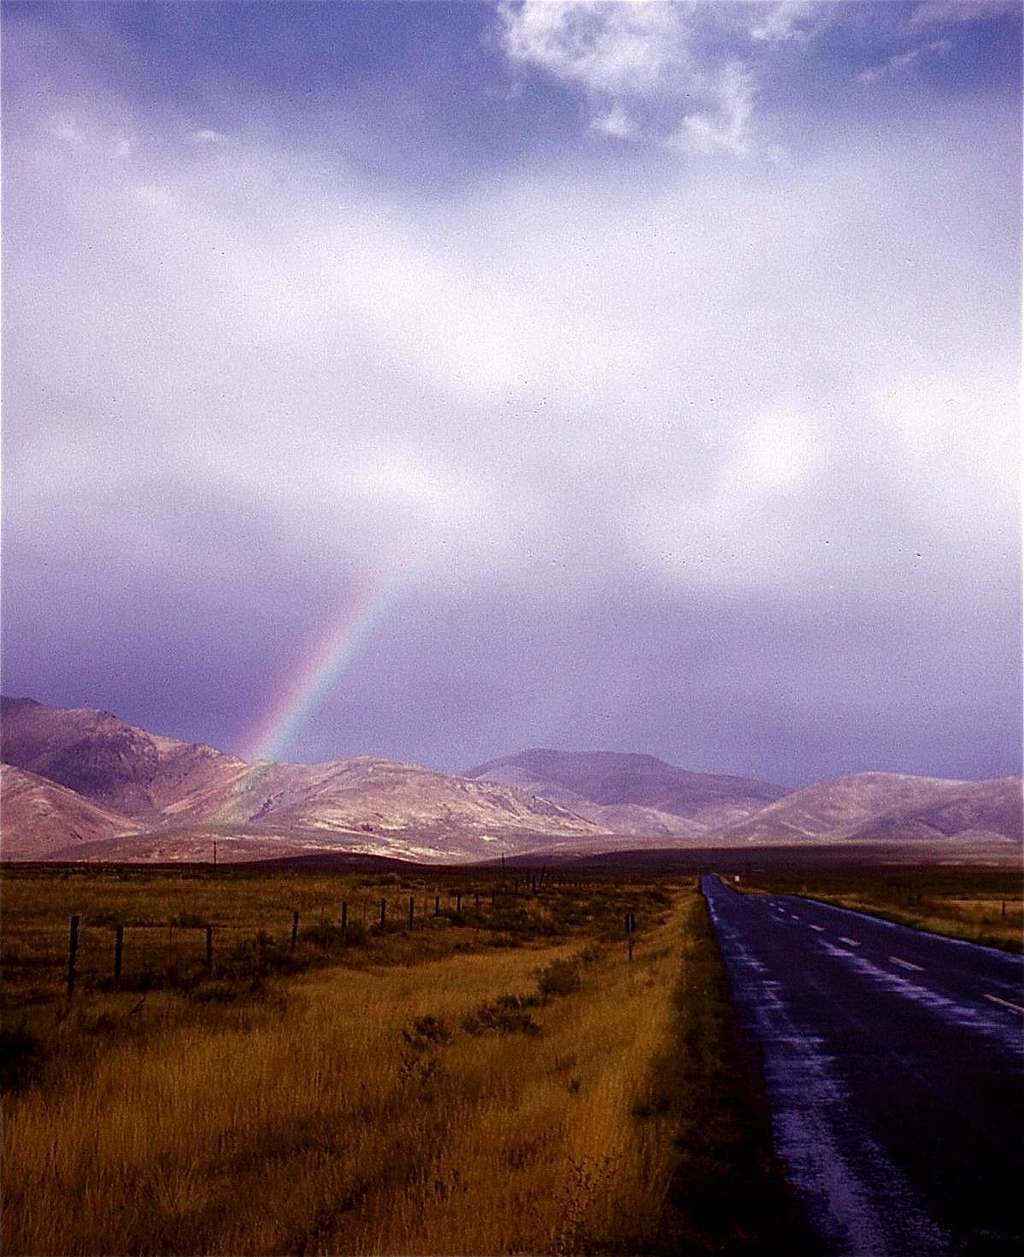 Idaho Rainbow